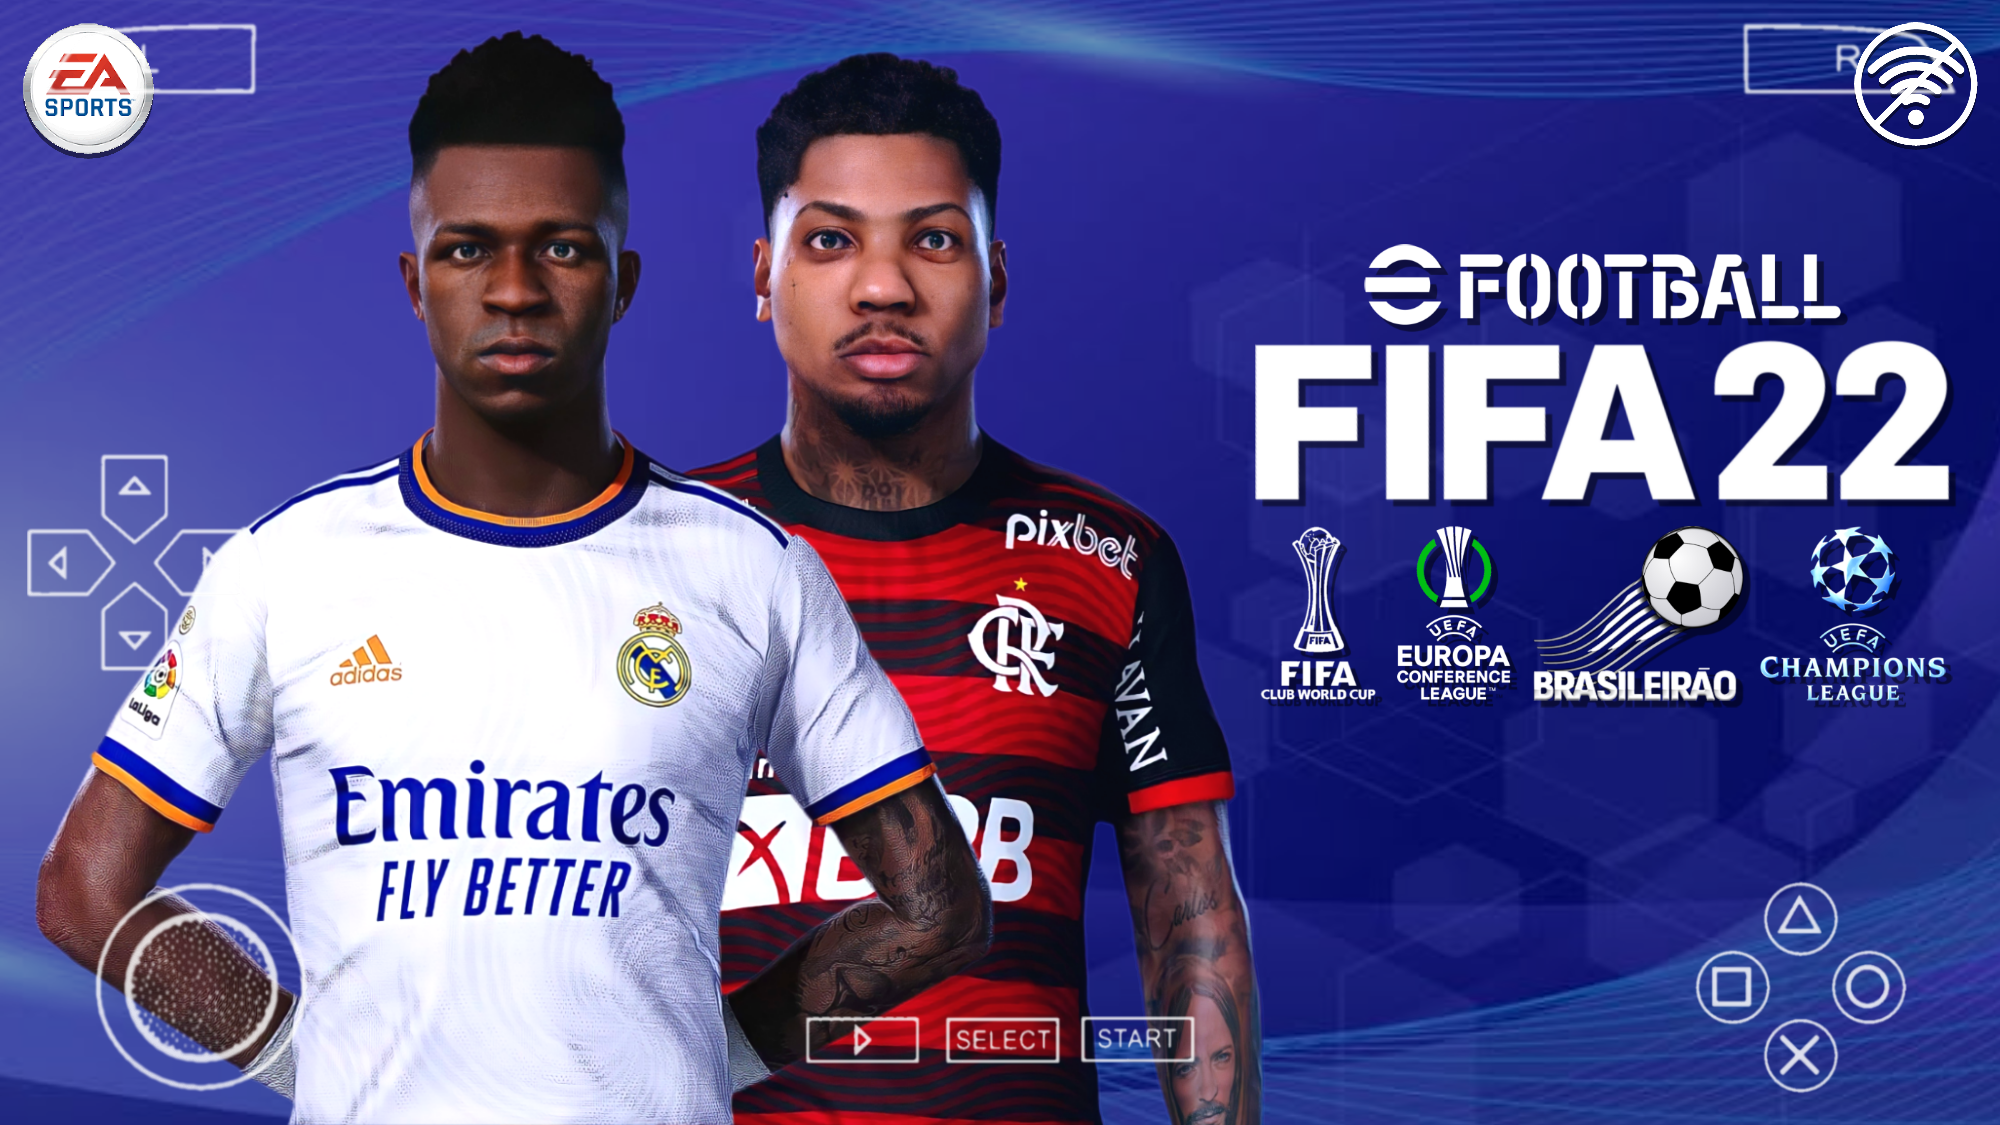 FIFA 22 ANDROID/PPSSPP COM BRASILEIRÃO E EUROPEU